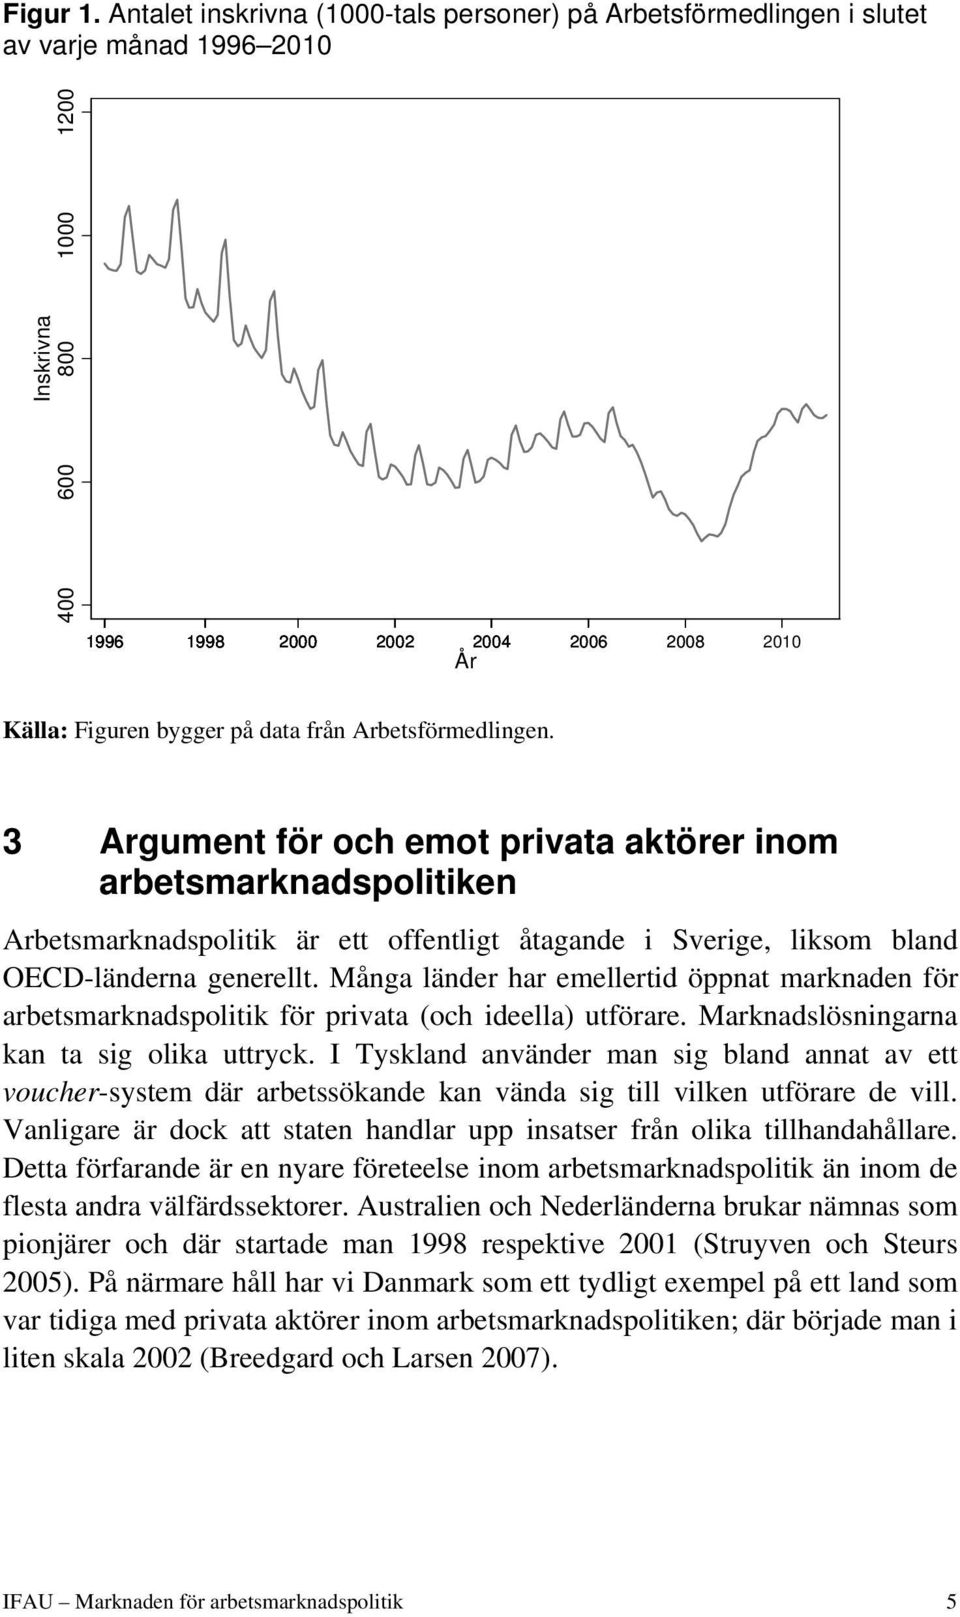 från Arbetsförmedlingen. 3 Argument för och emot privata aktörer inom arbetsmarknadspolitiken Arbetsmarknadspolitik är ett offentligt åtagande i Sverige, liksom bland OECD-länderna generellt.